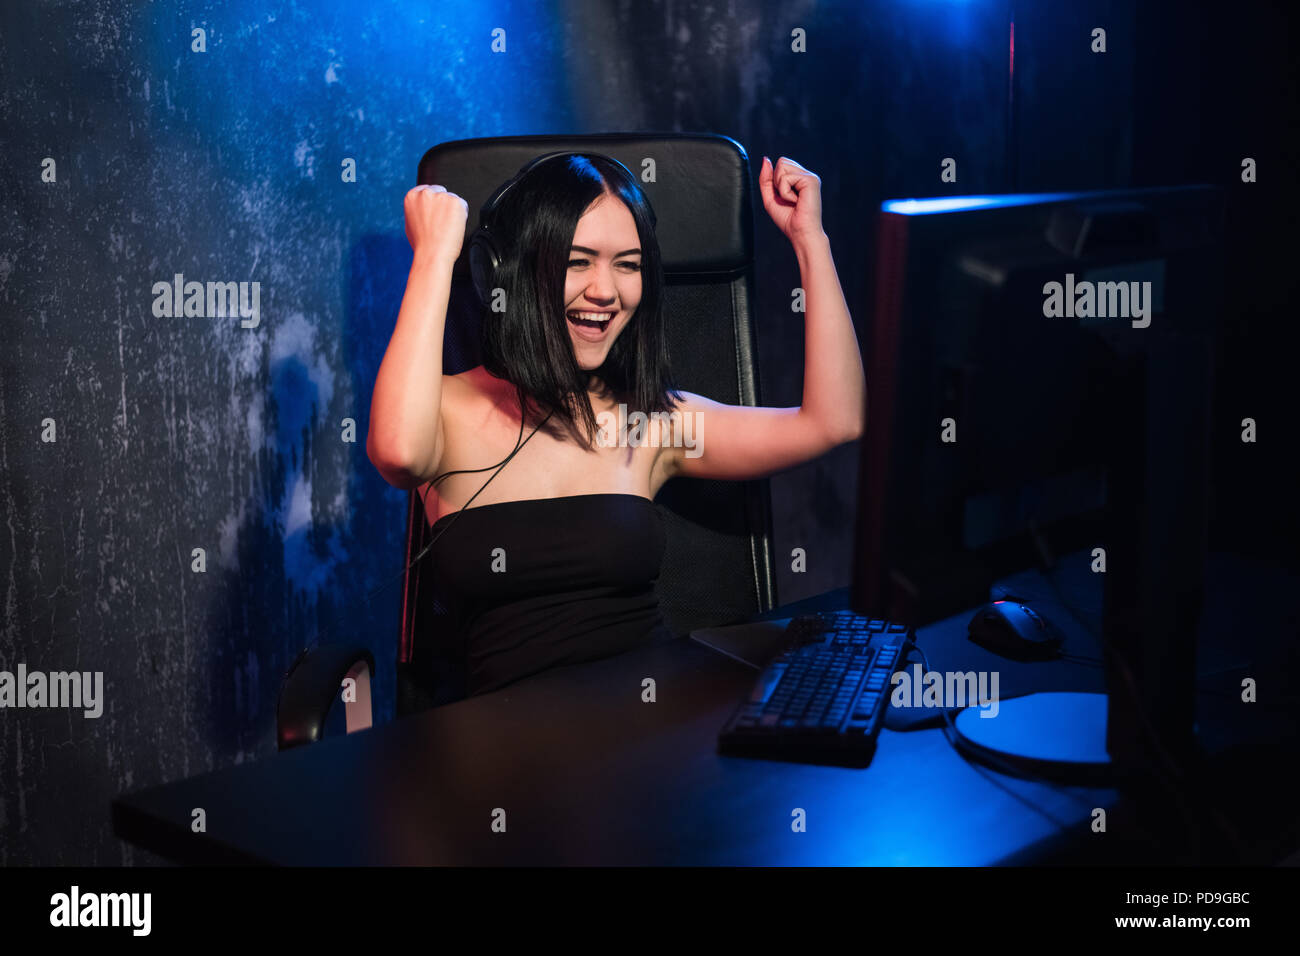 Portrait einer jungen glückliches Mädchen, nachdem er ein Video Spiel freut, - Feiern gewinnen in Gaming emotion Konzept. Stockfoto